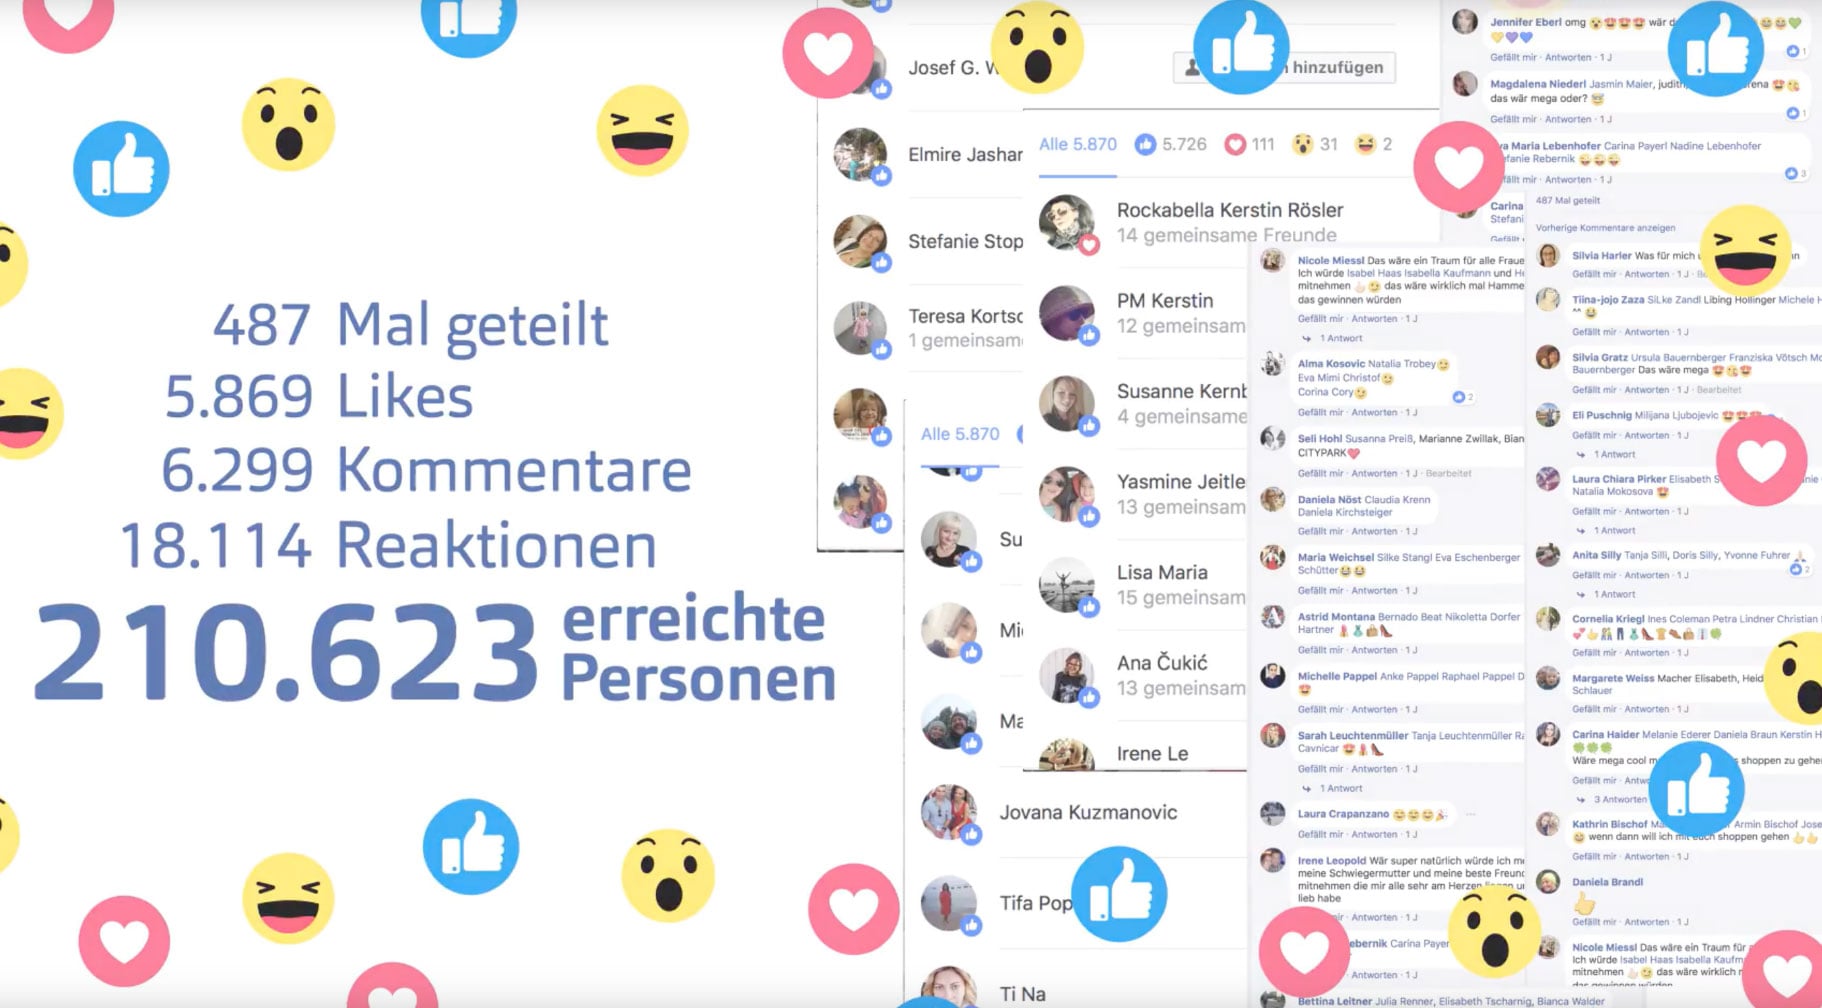 icons: Herz, Like, Smilies, Facebook seite mit 210.623 erreichten Personen